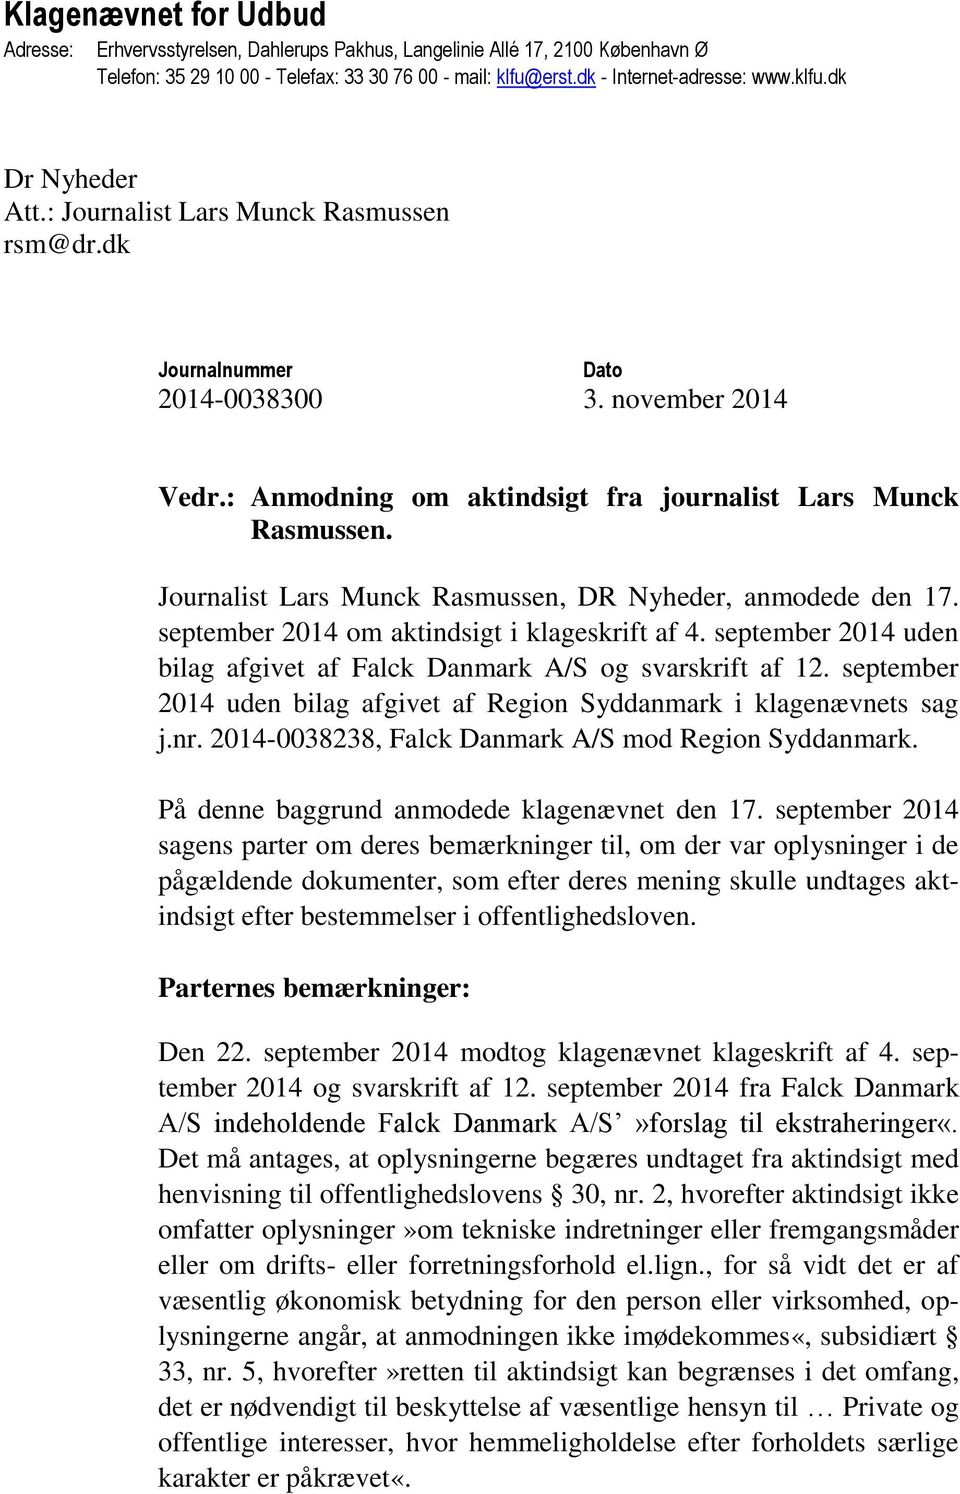 Journalist Lars Munck Rasmussen, DR Nyheder, anmodede den 17. september 2014 om aktindsigt i klageskrift af 4. september 2014 uden bilag afgivet af Falck Danmark A/S og svarskrift af 12.